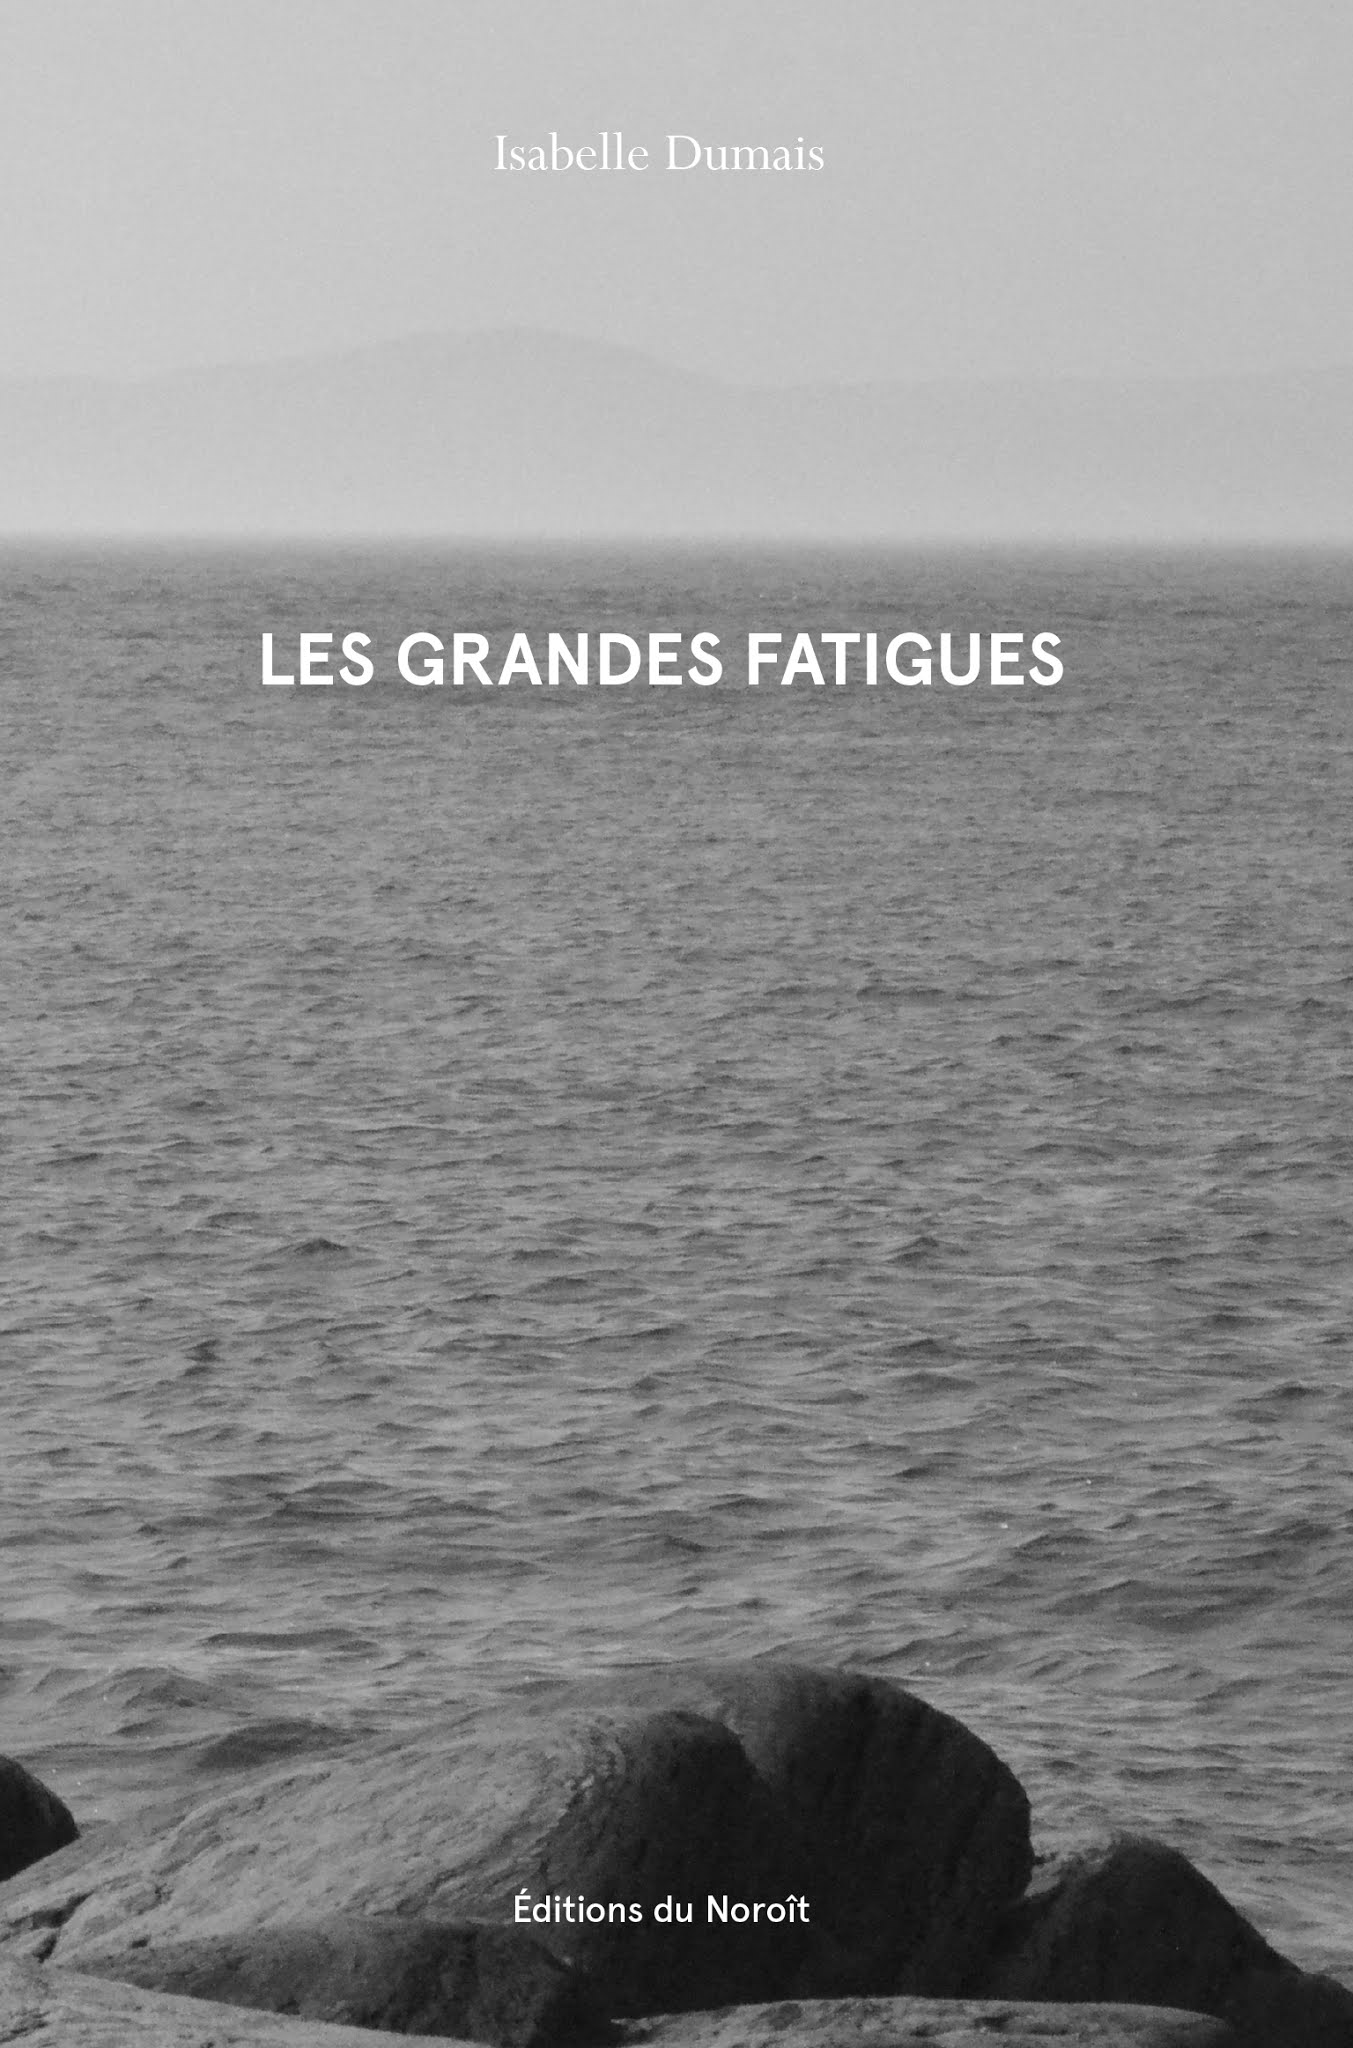 Correspondances - Lettres d'Alain Grandbois - Presses de l